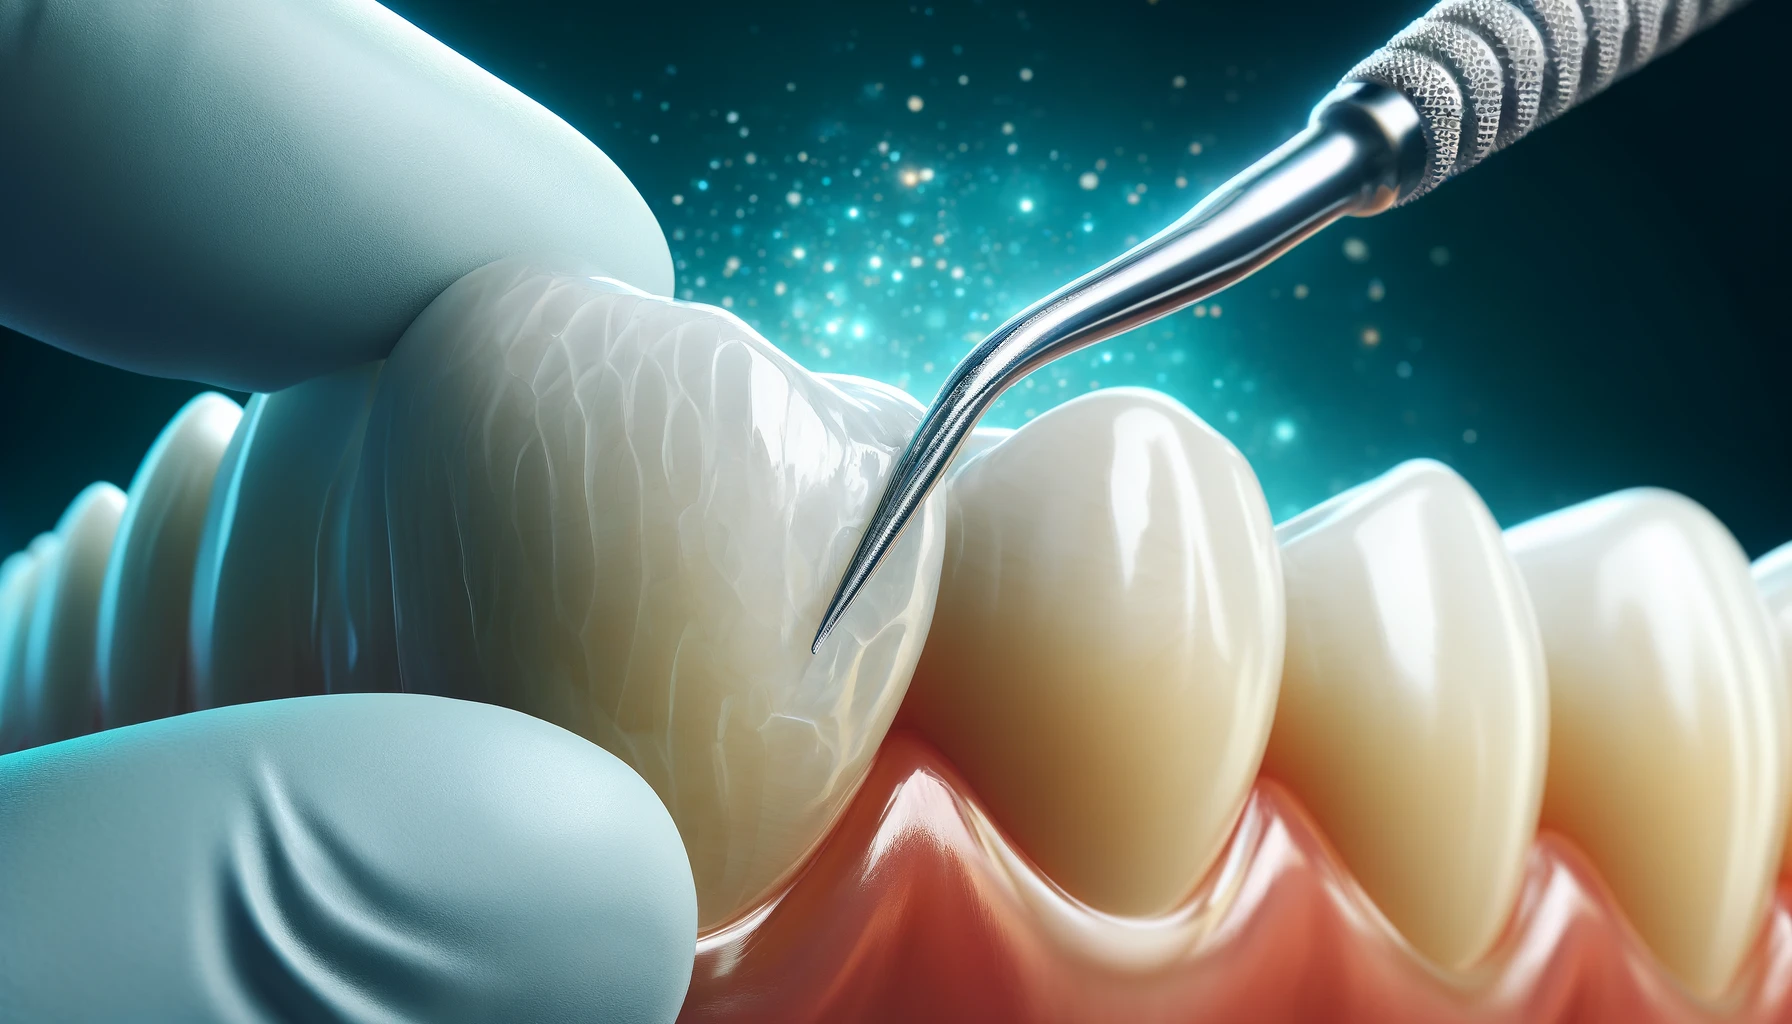 Bilde viser bruk av komposittmaterialer i tannbehandling